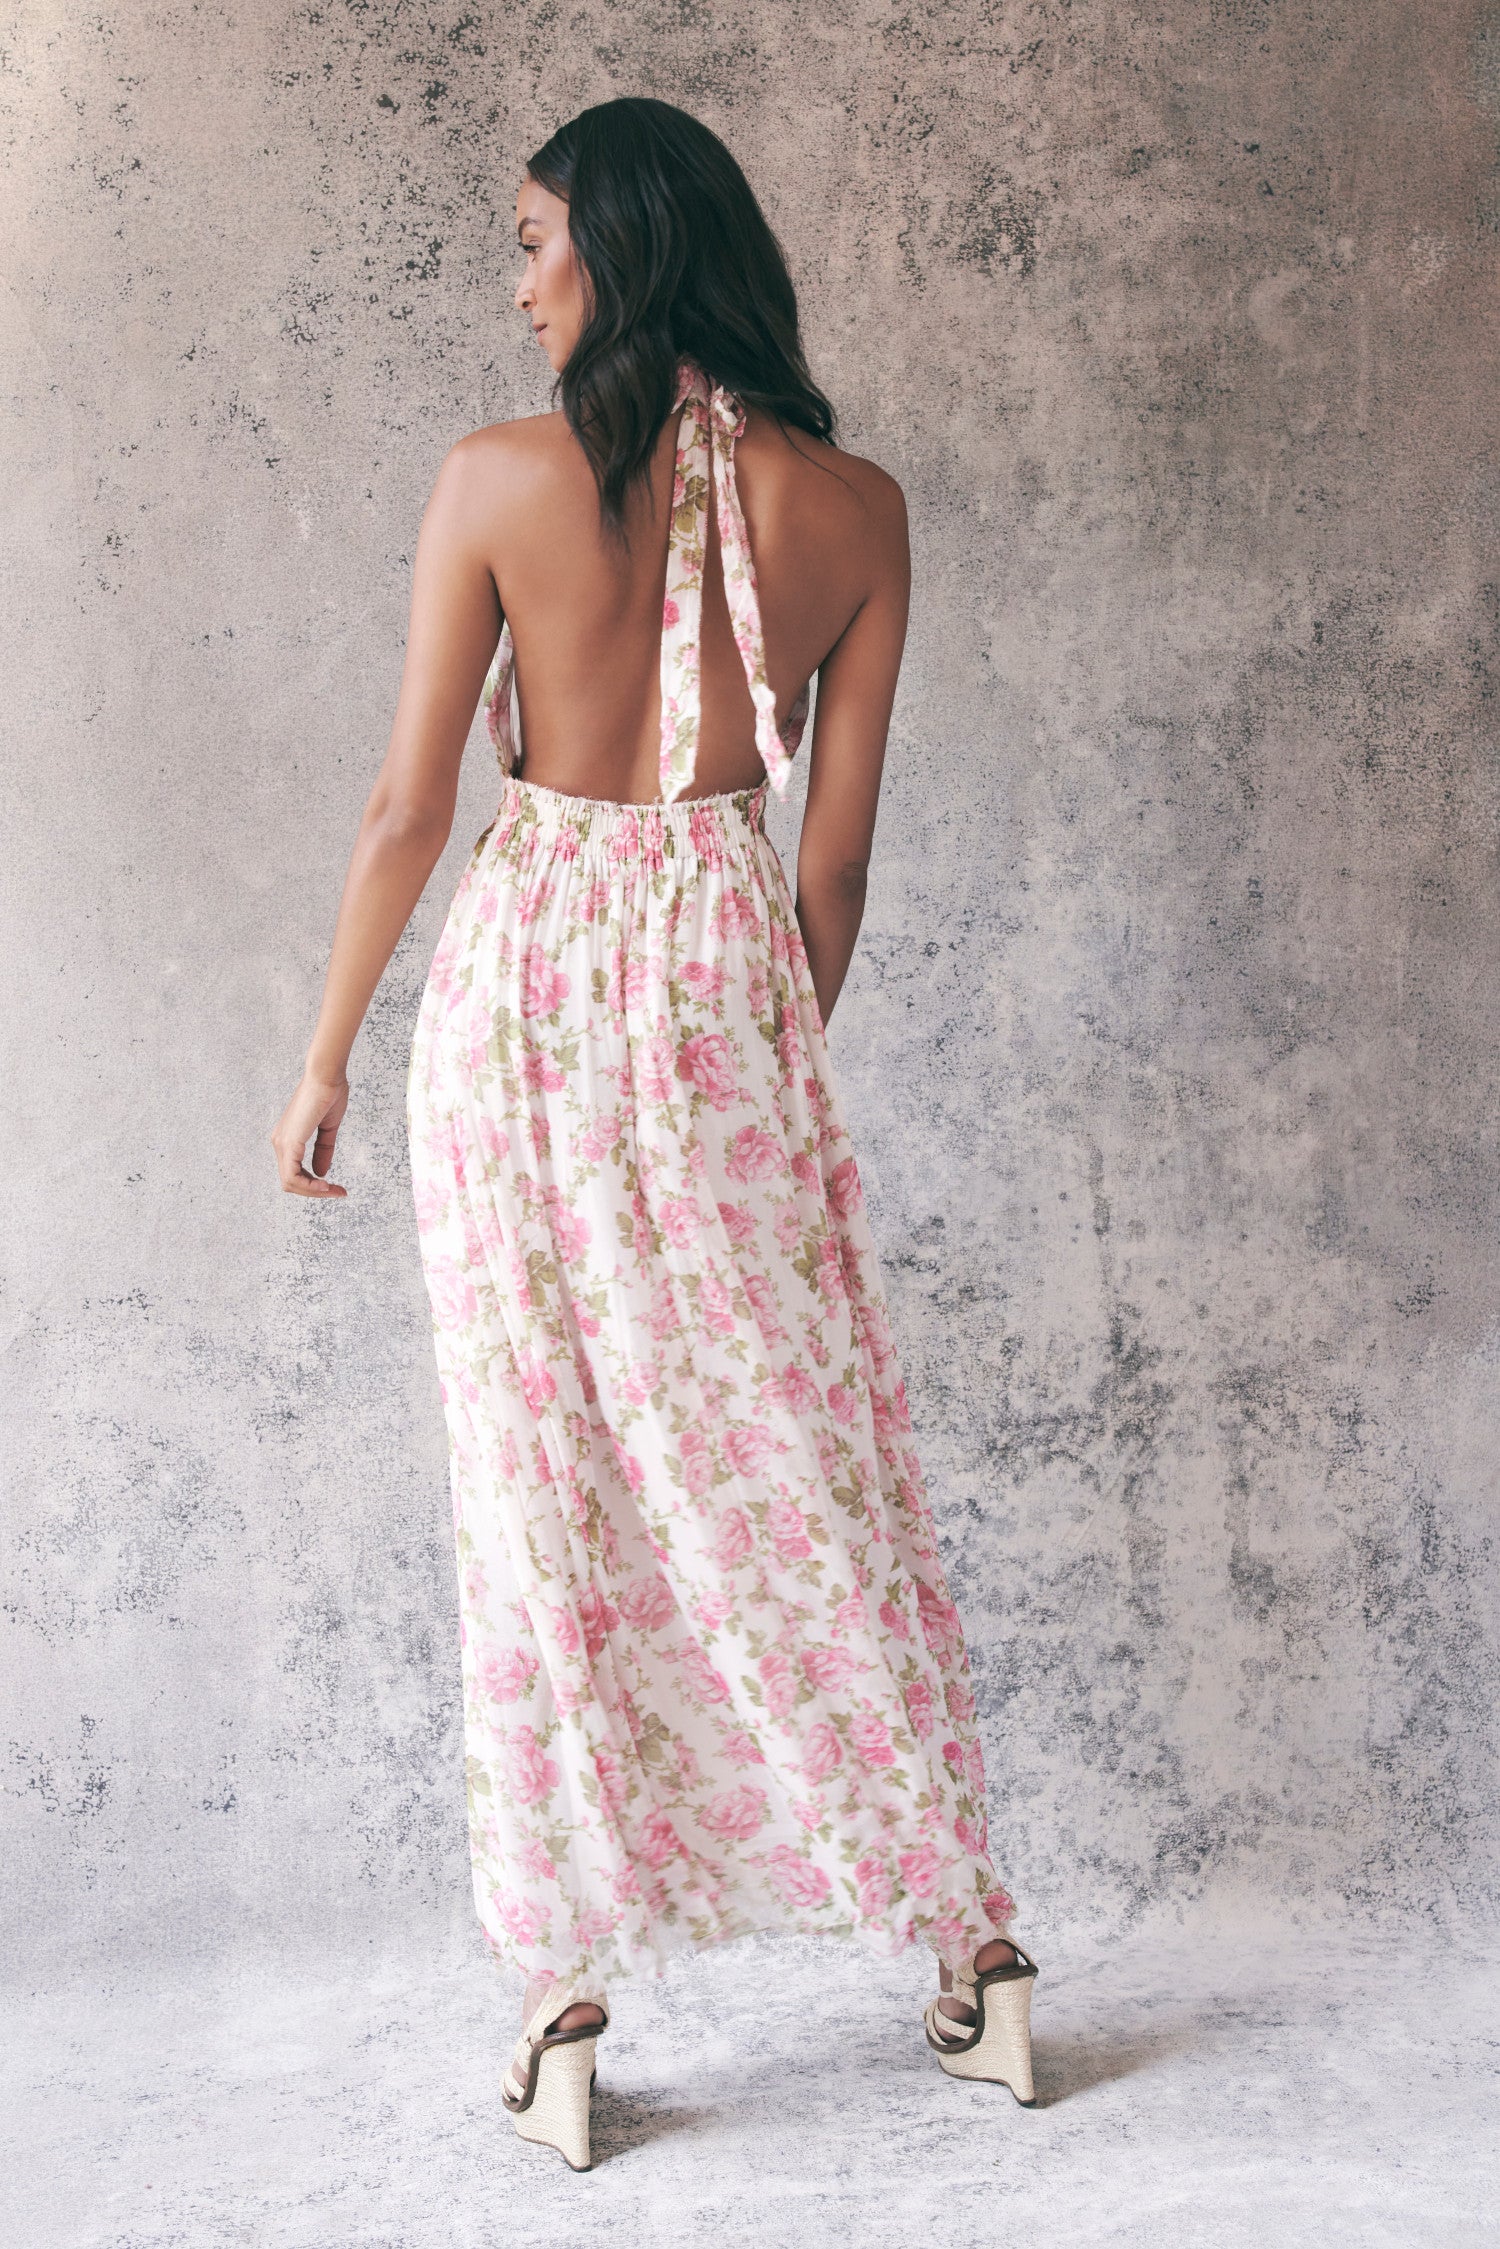 Back image of model wearing pink floral halter maxi dress